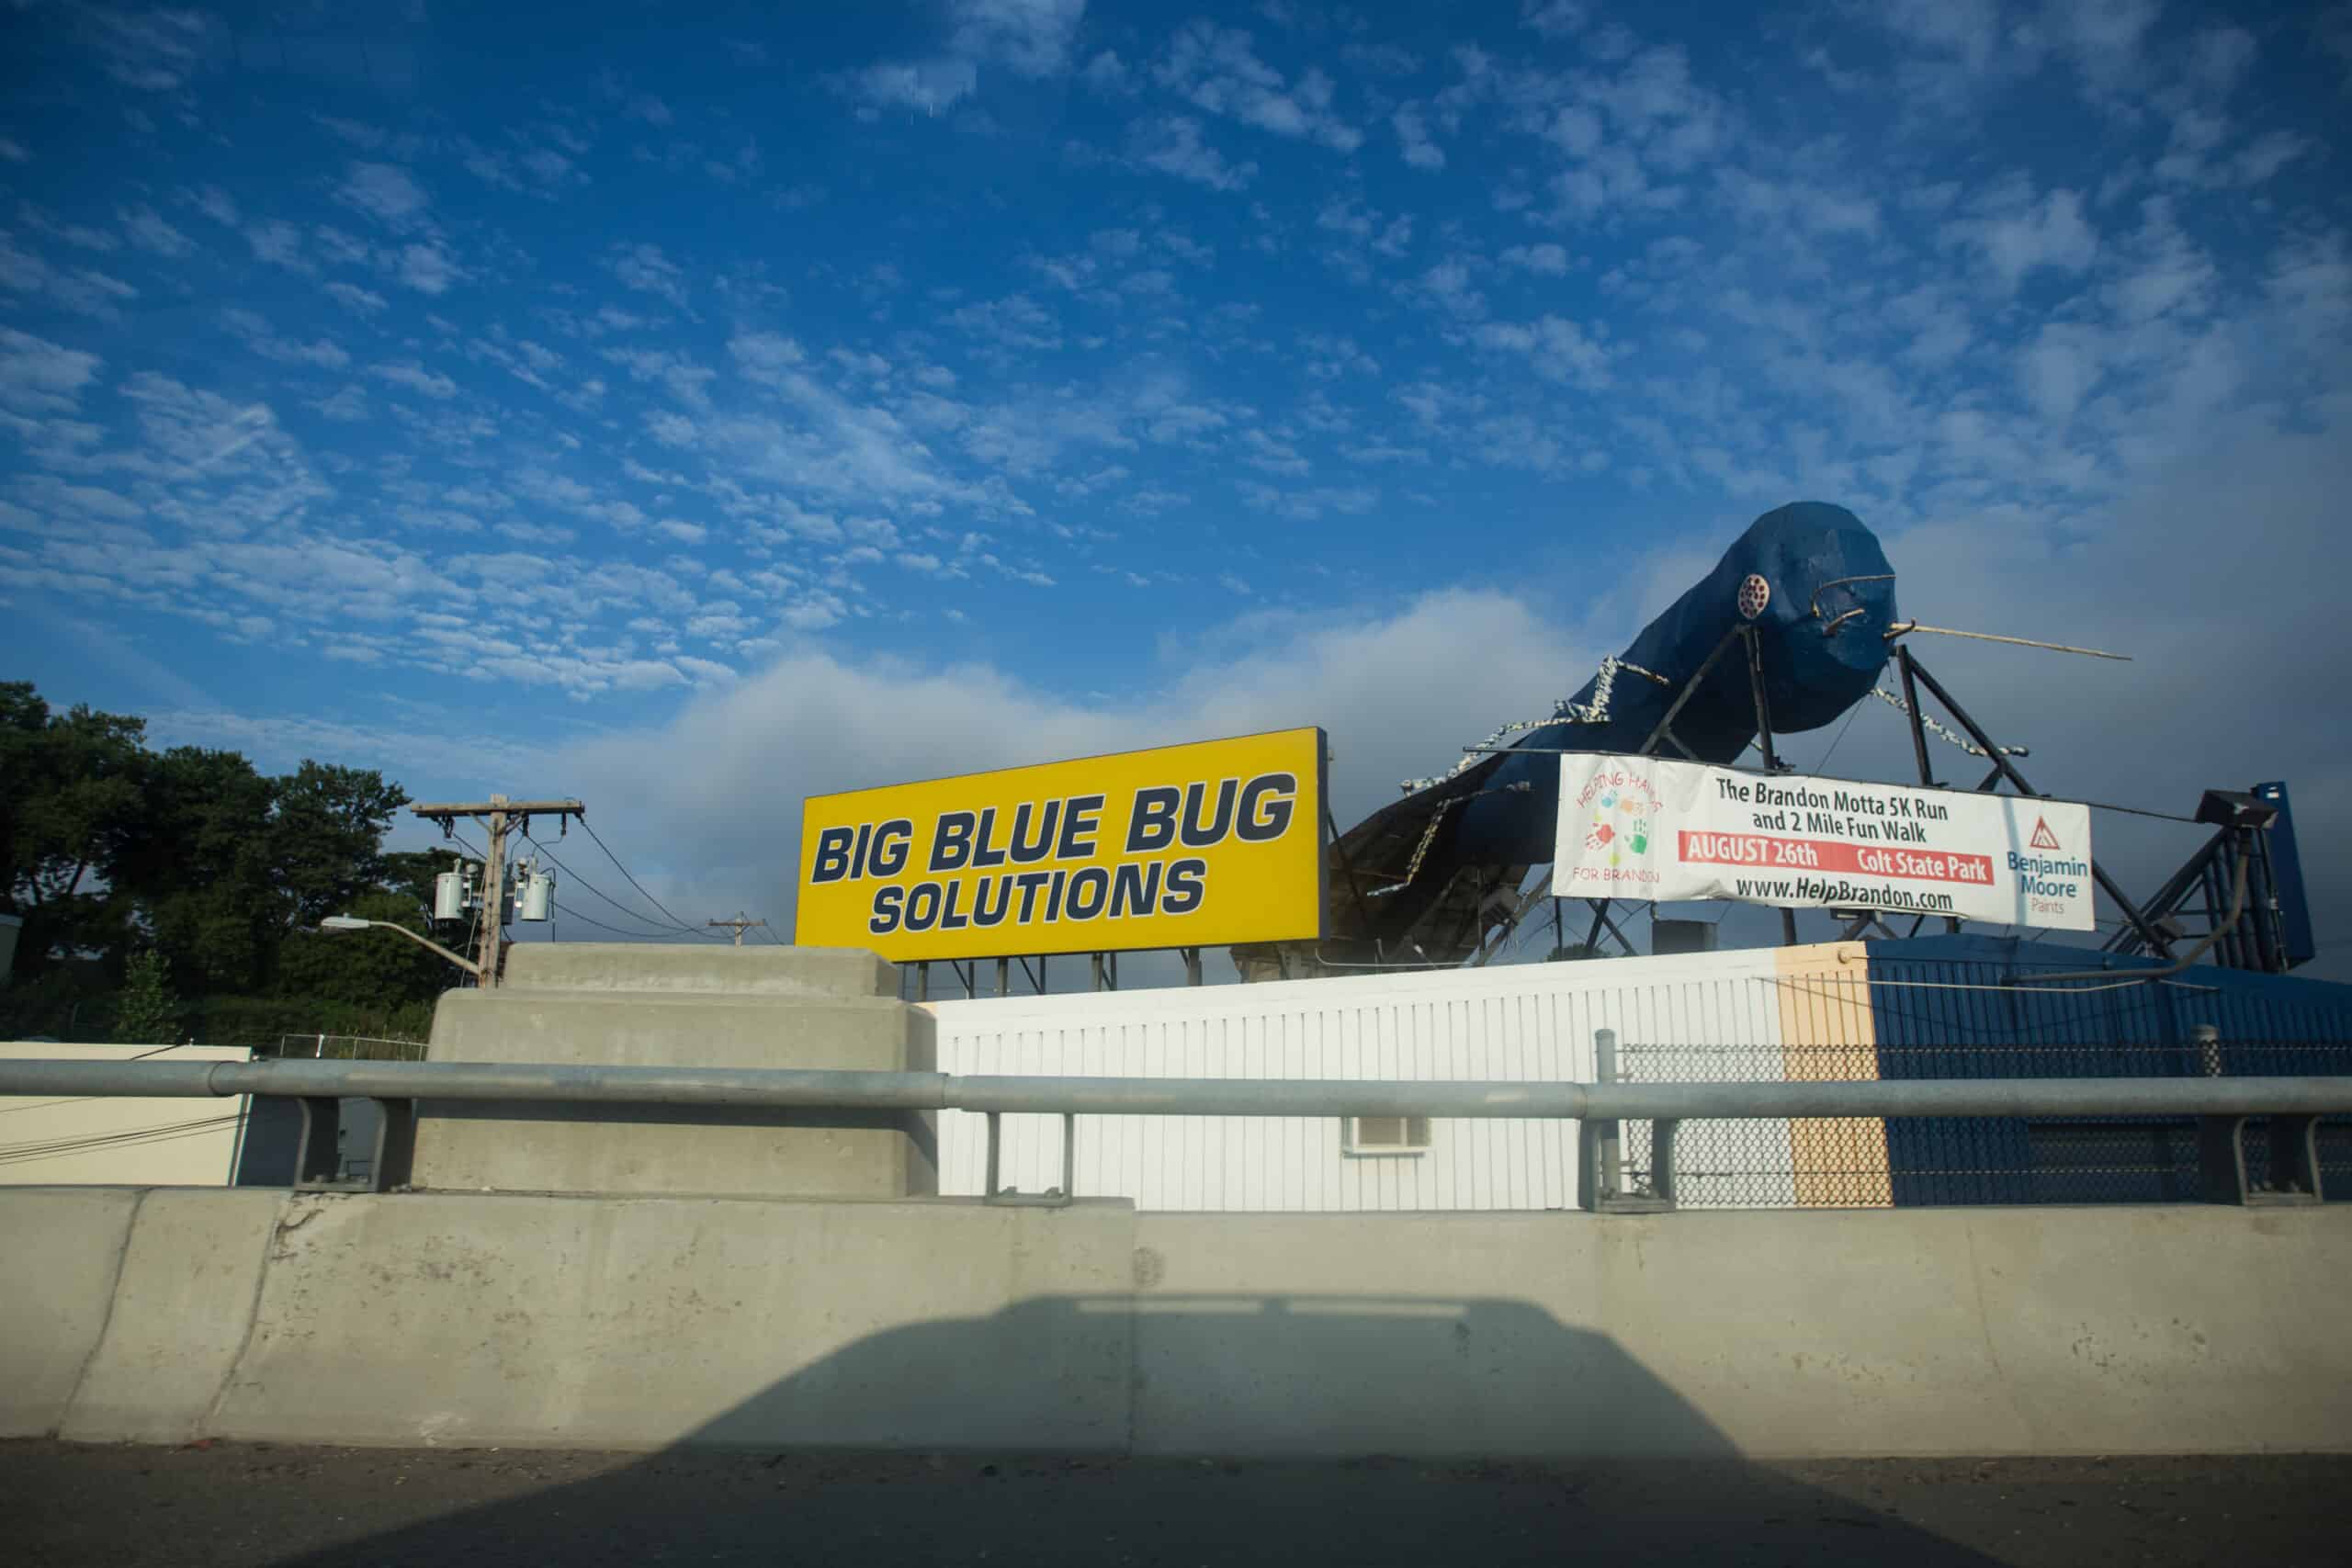 Big blue bug solutions by Tom Woodward